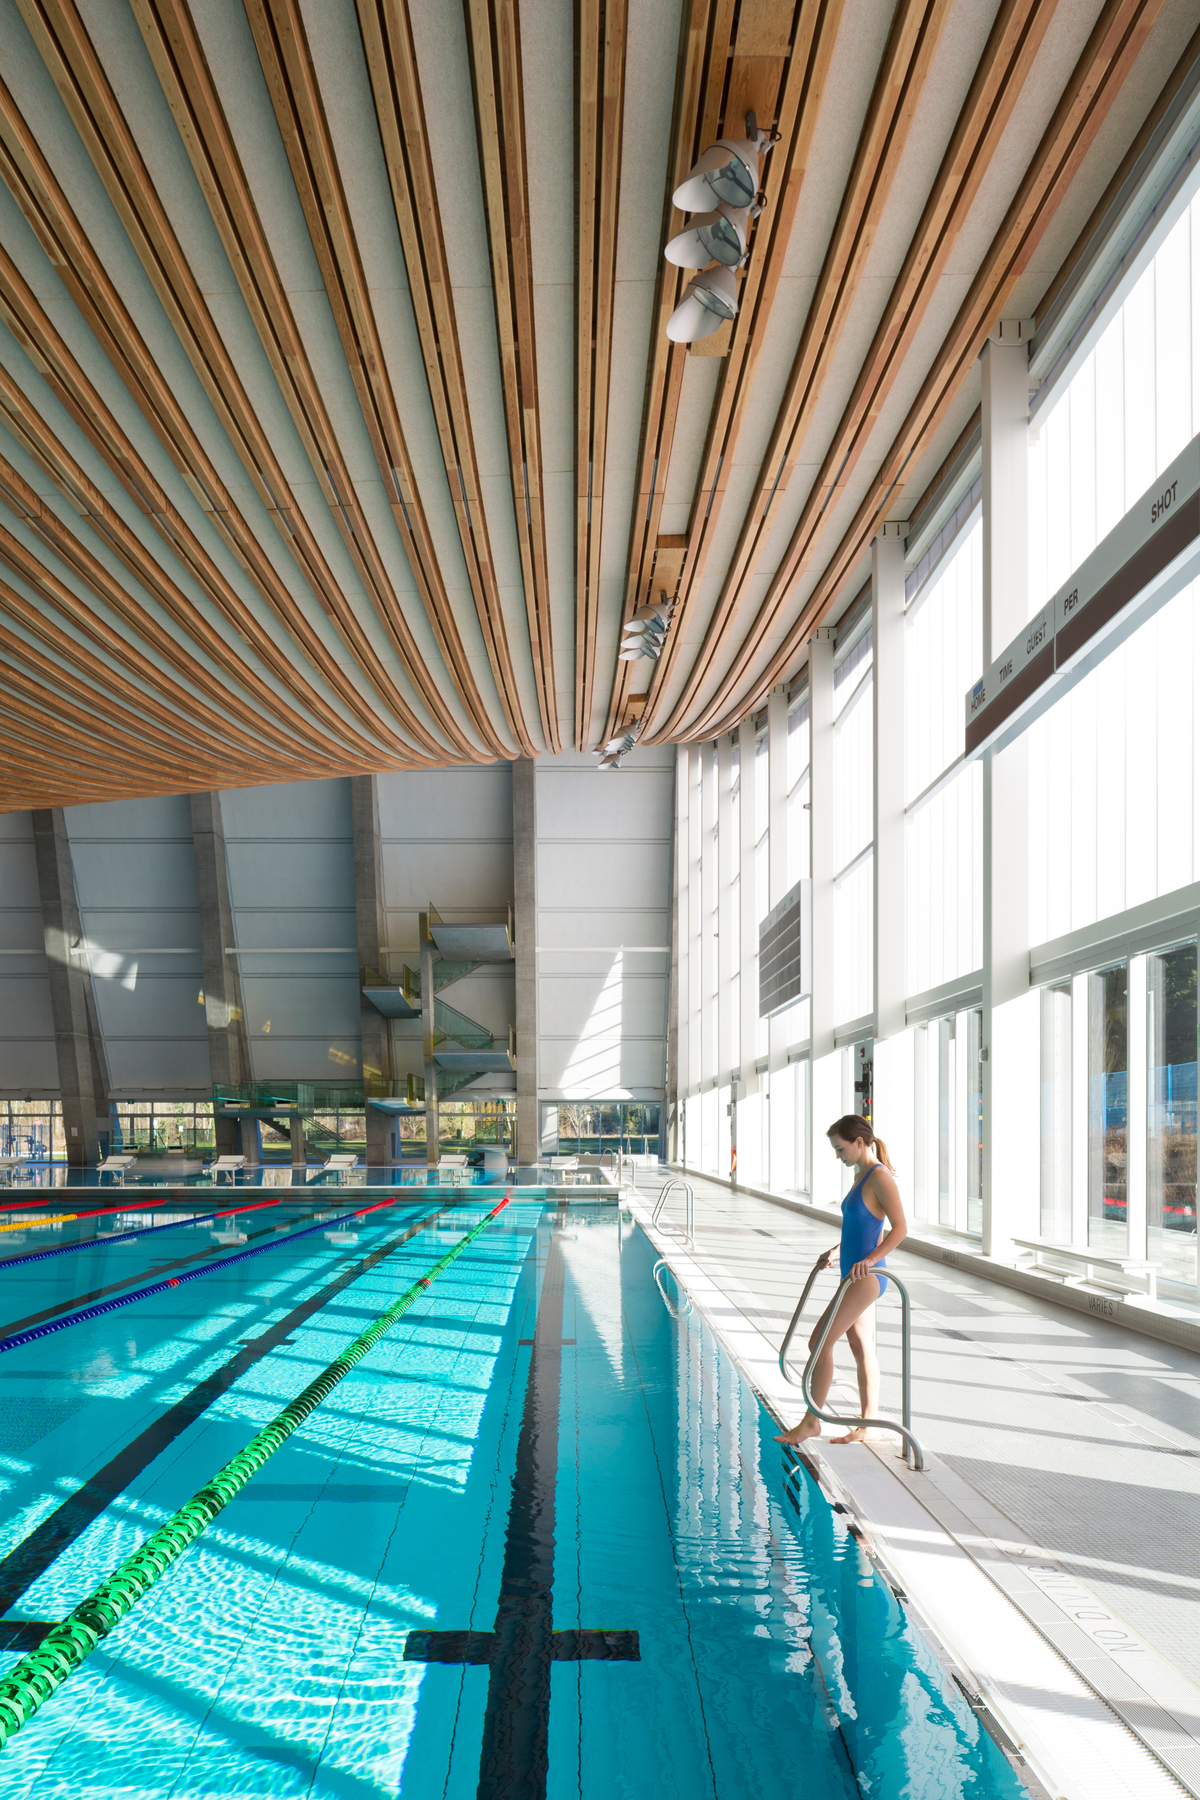 室内白天的美景高地水上运动中心长游泳圈区域显示游泳者即将进入水下面胶合板电缆预制屋顶组件